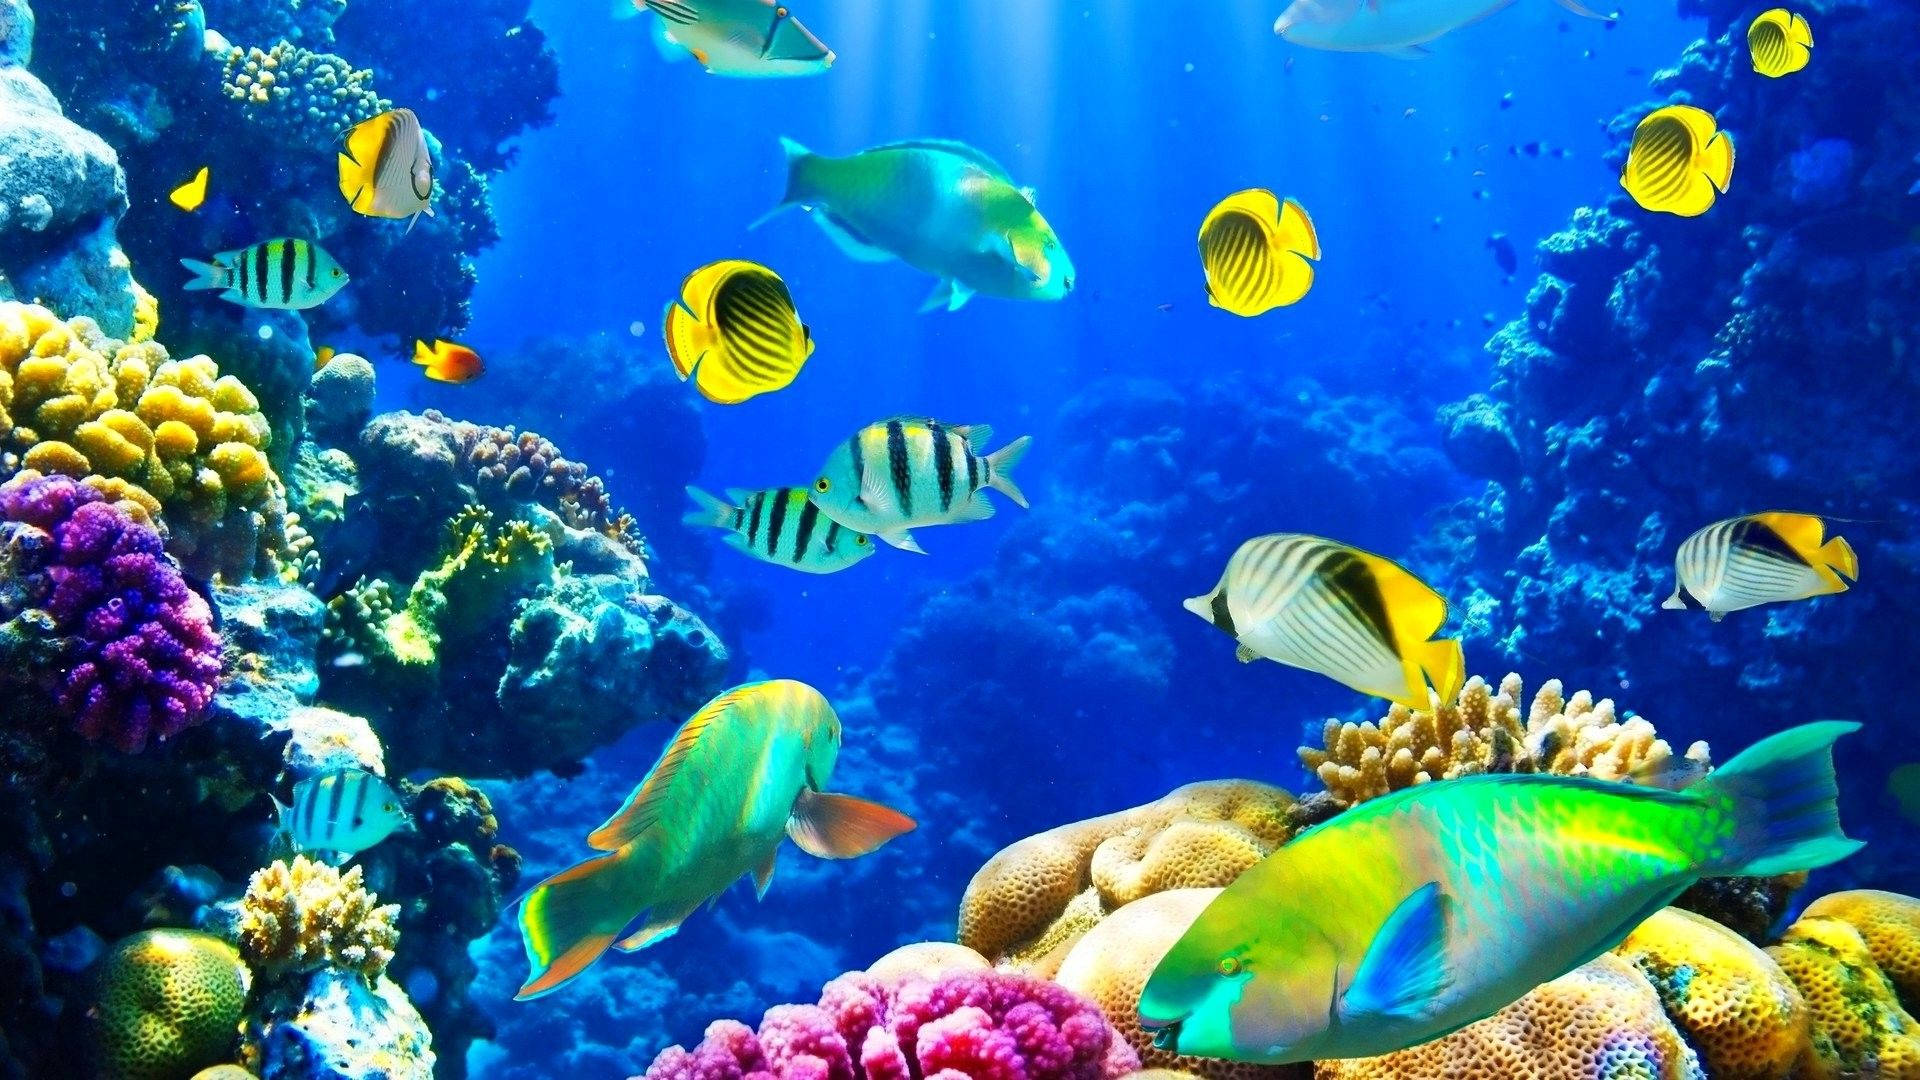 46 Underwater Ocean Wallpaper  WallpaperSafari